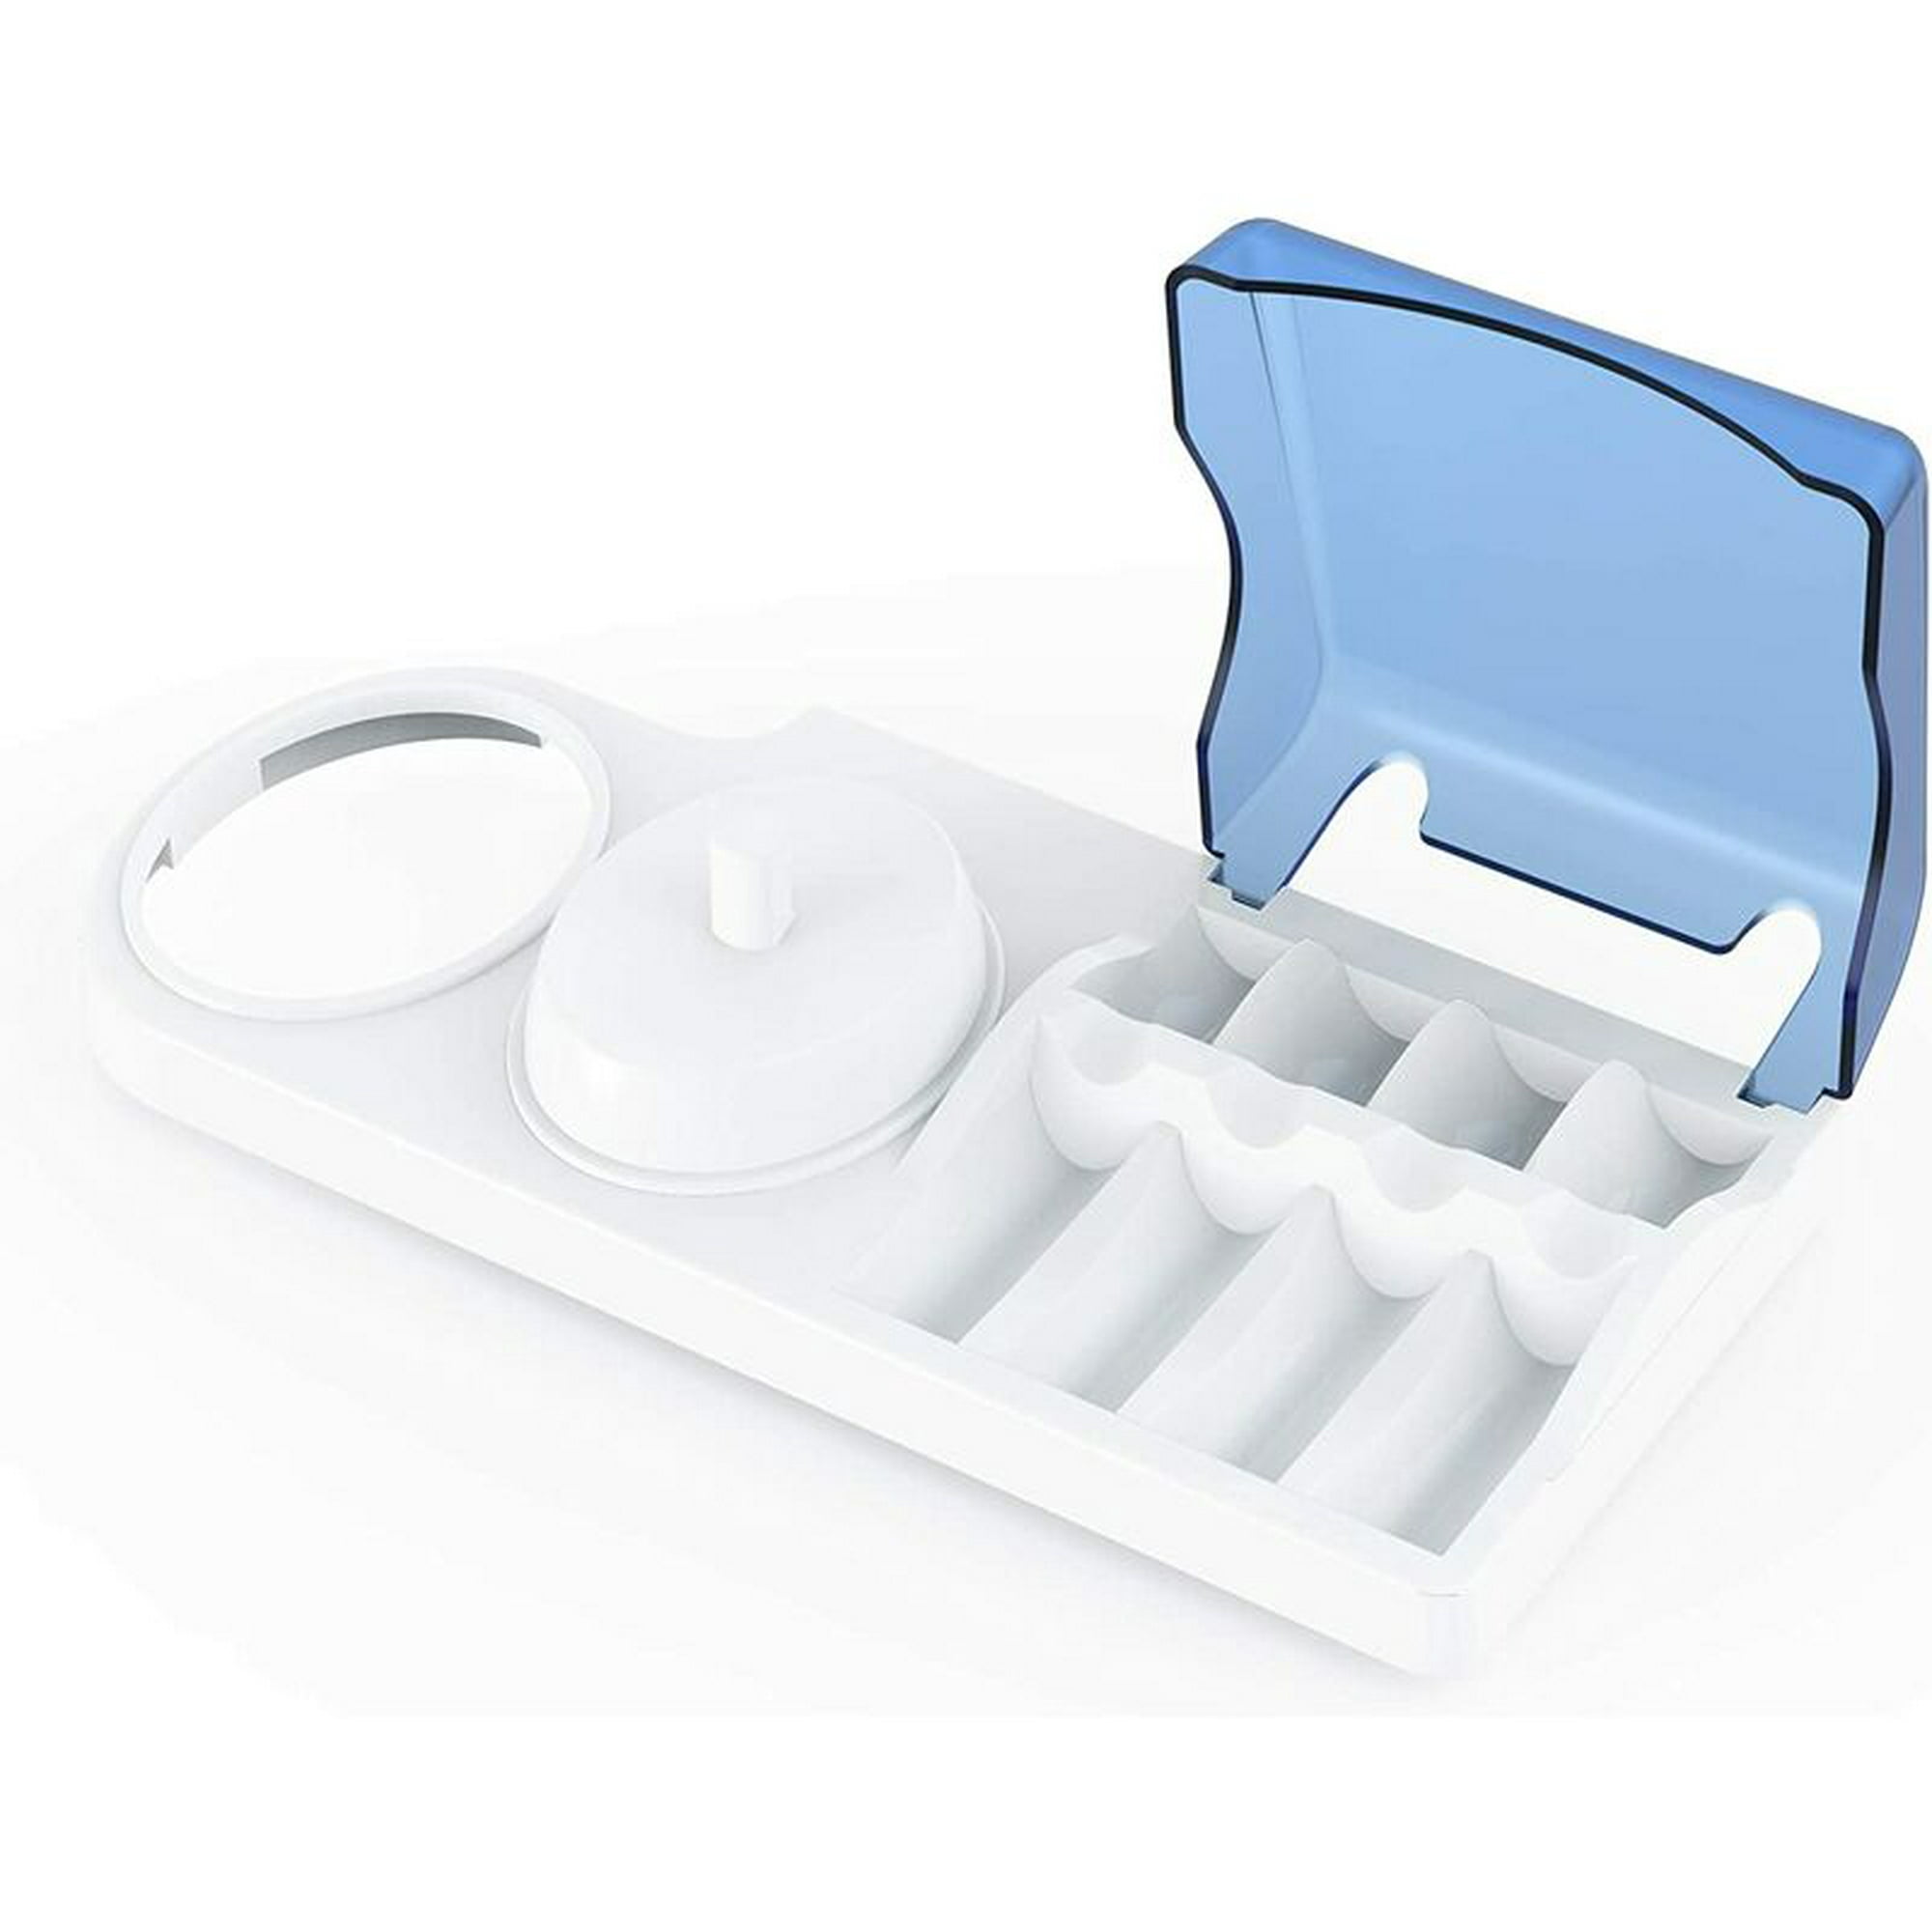 Soporte eléctrico para cepillos de dientes con 1 ranura de soporte de  carga, 1 soporte para cepillos de dientes y 4 soportes para cabezal de  cepillo